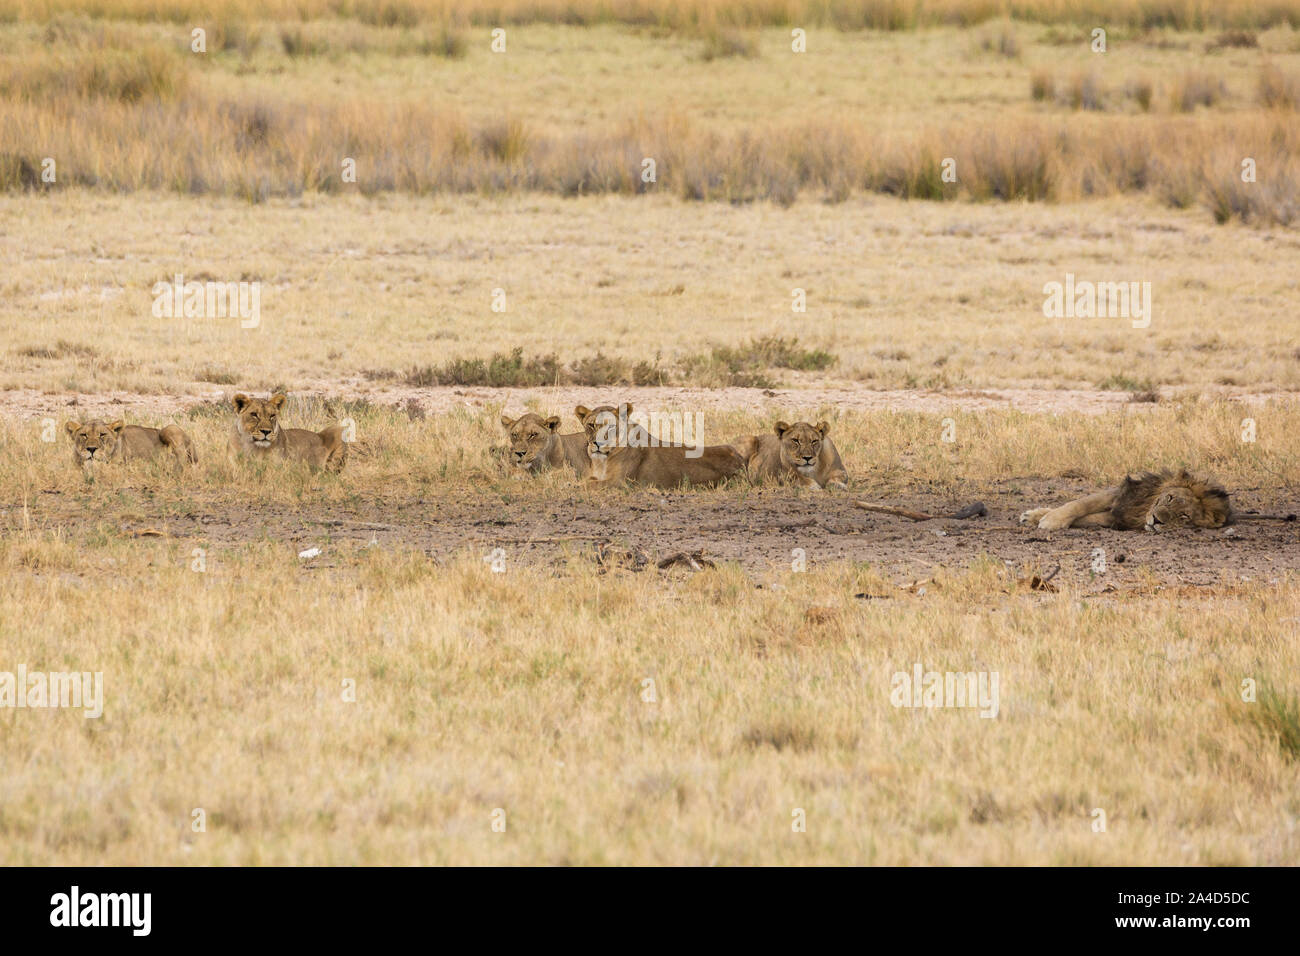 Un pack de lions femelle est assis dans l'ombre à attendre, un mâle Lion dort, Etosha, Namibie, Afrique Banque D'Images